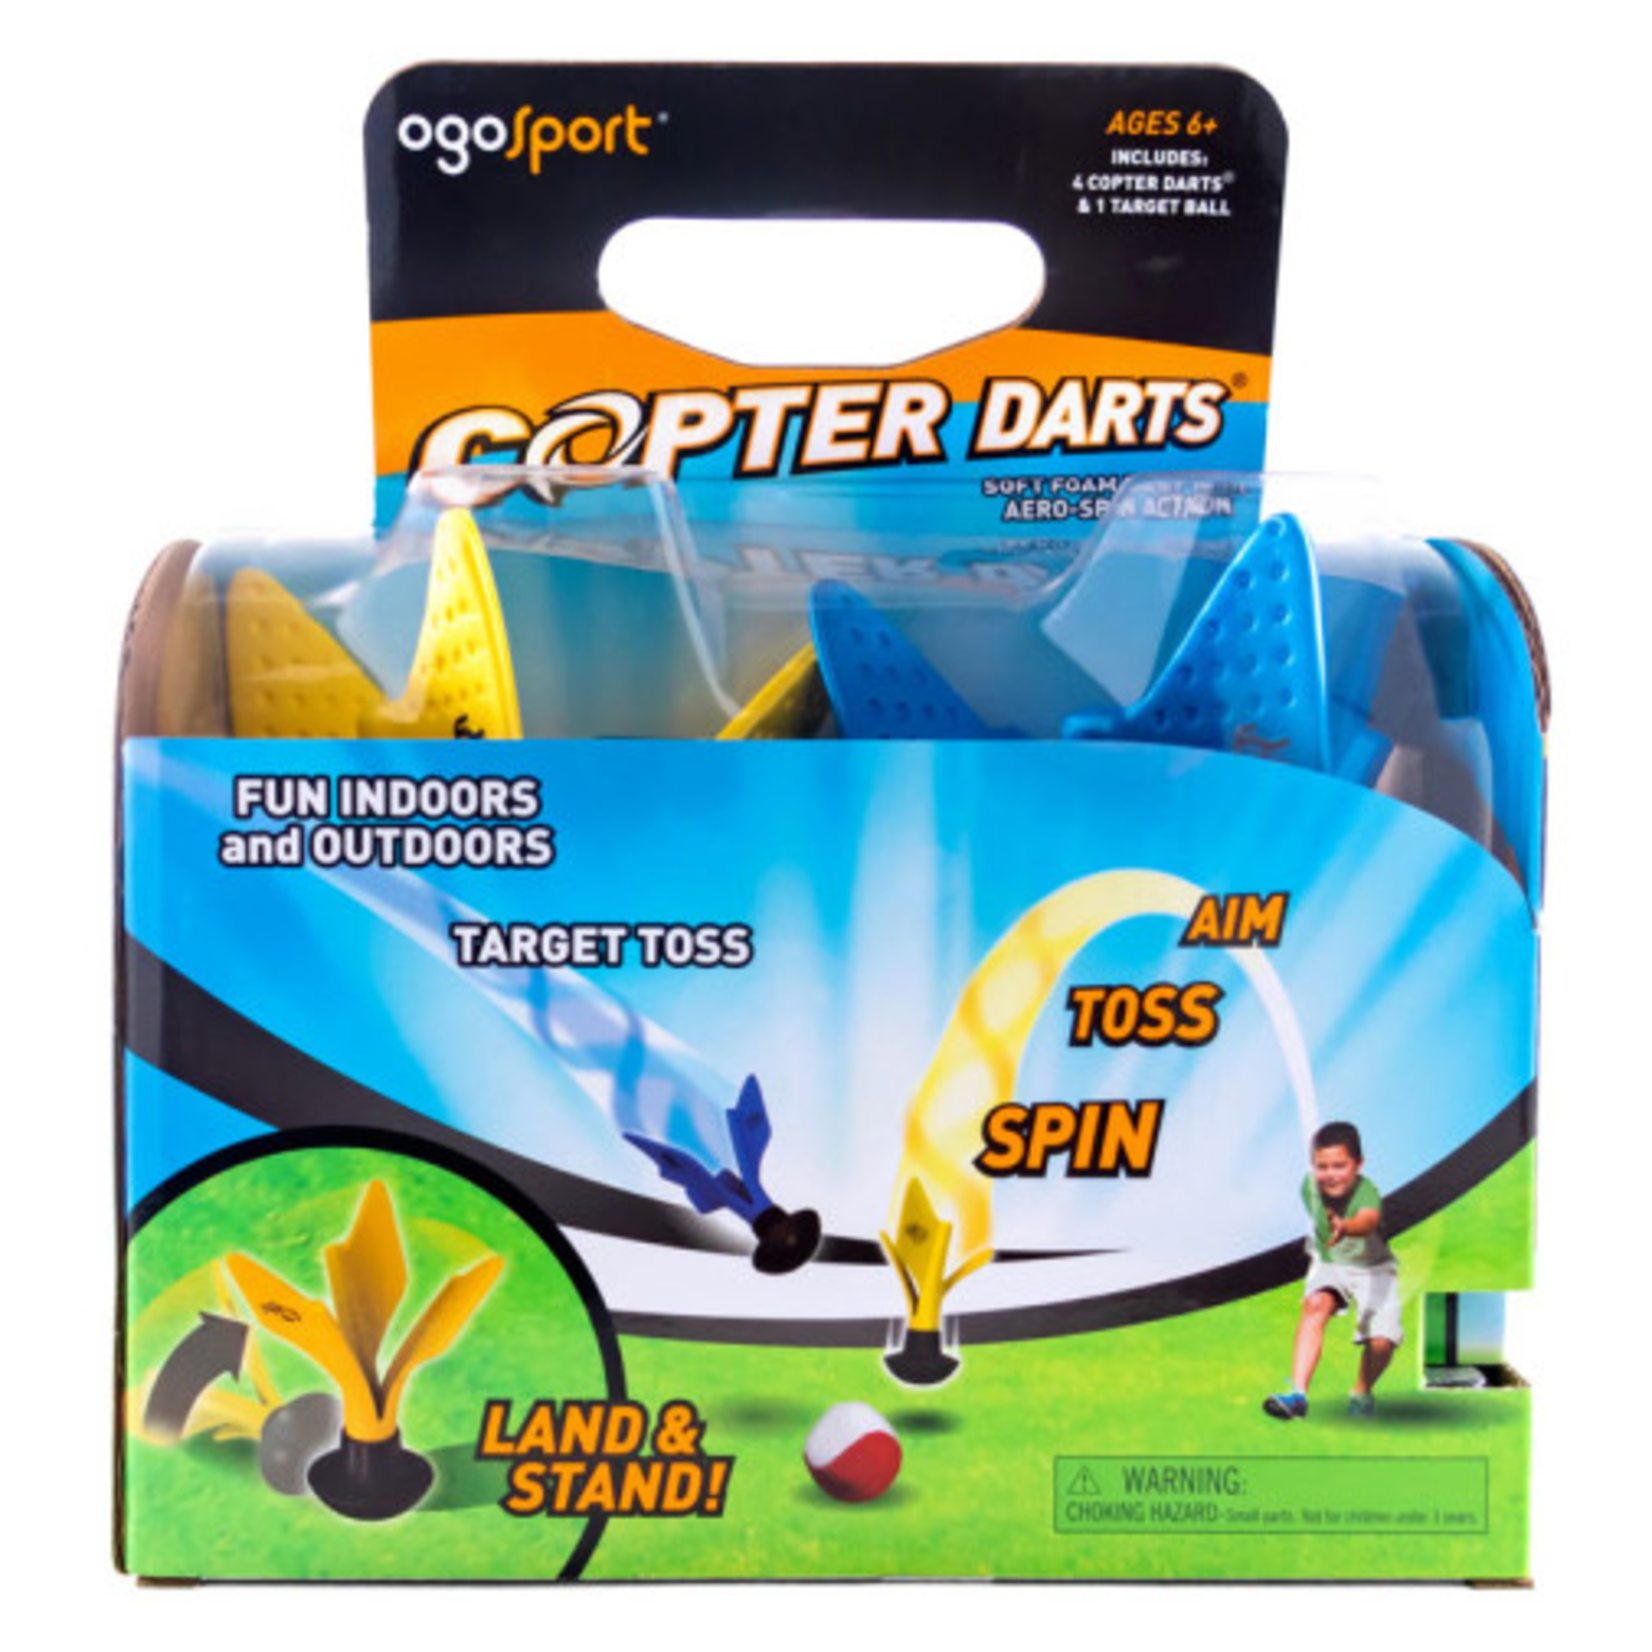 OgoSport Copter Darts